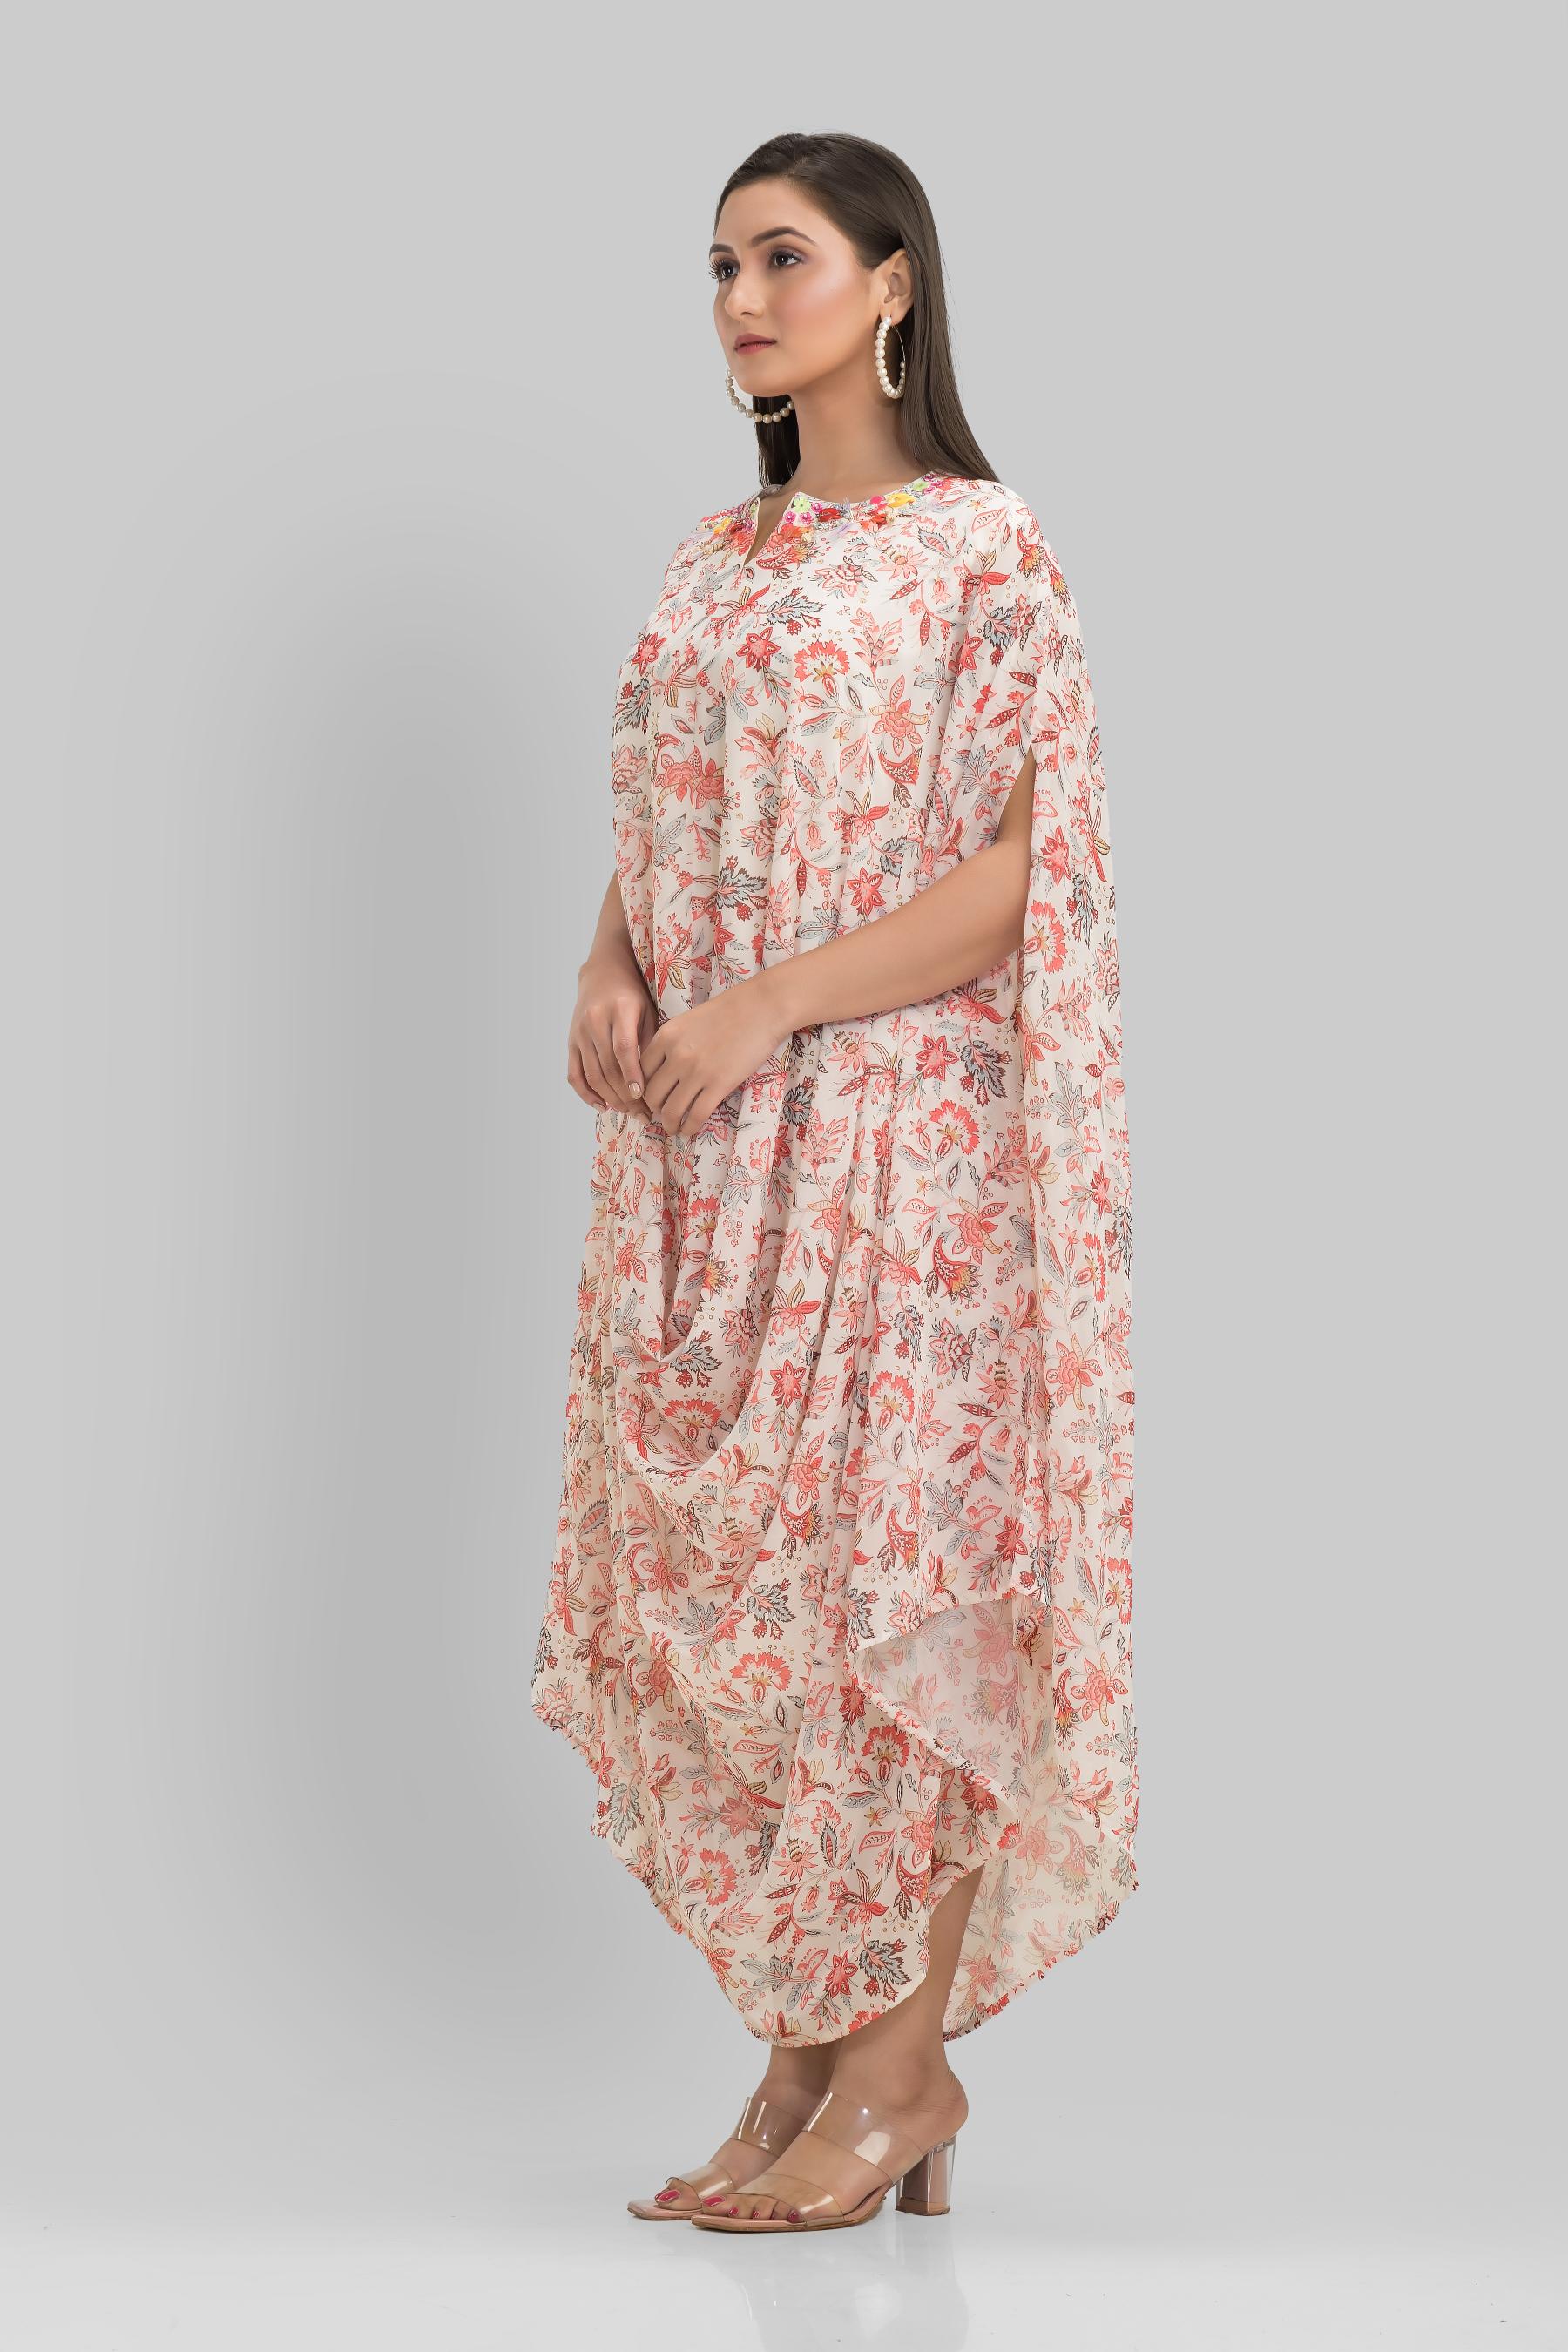 Off White Floral Printed Crystal Georgette Silk Kaftan Dress